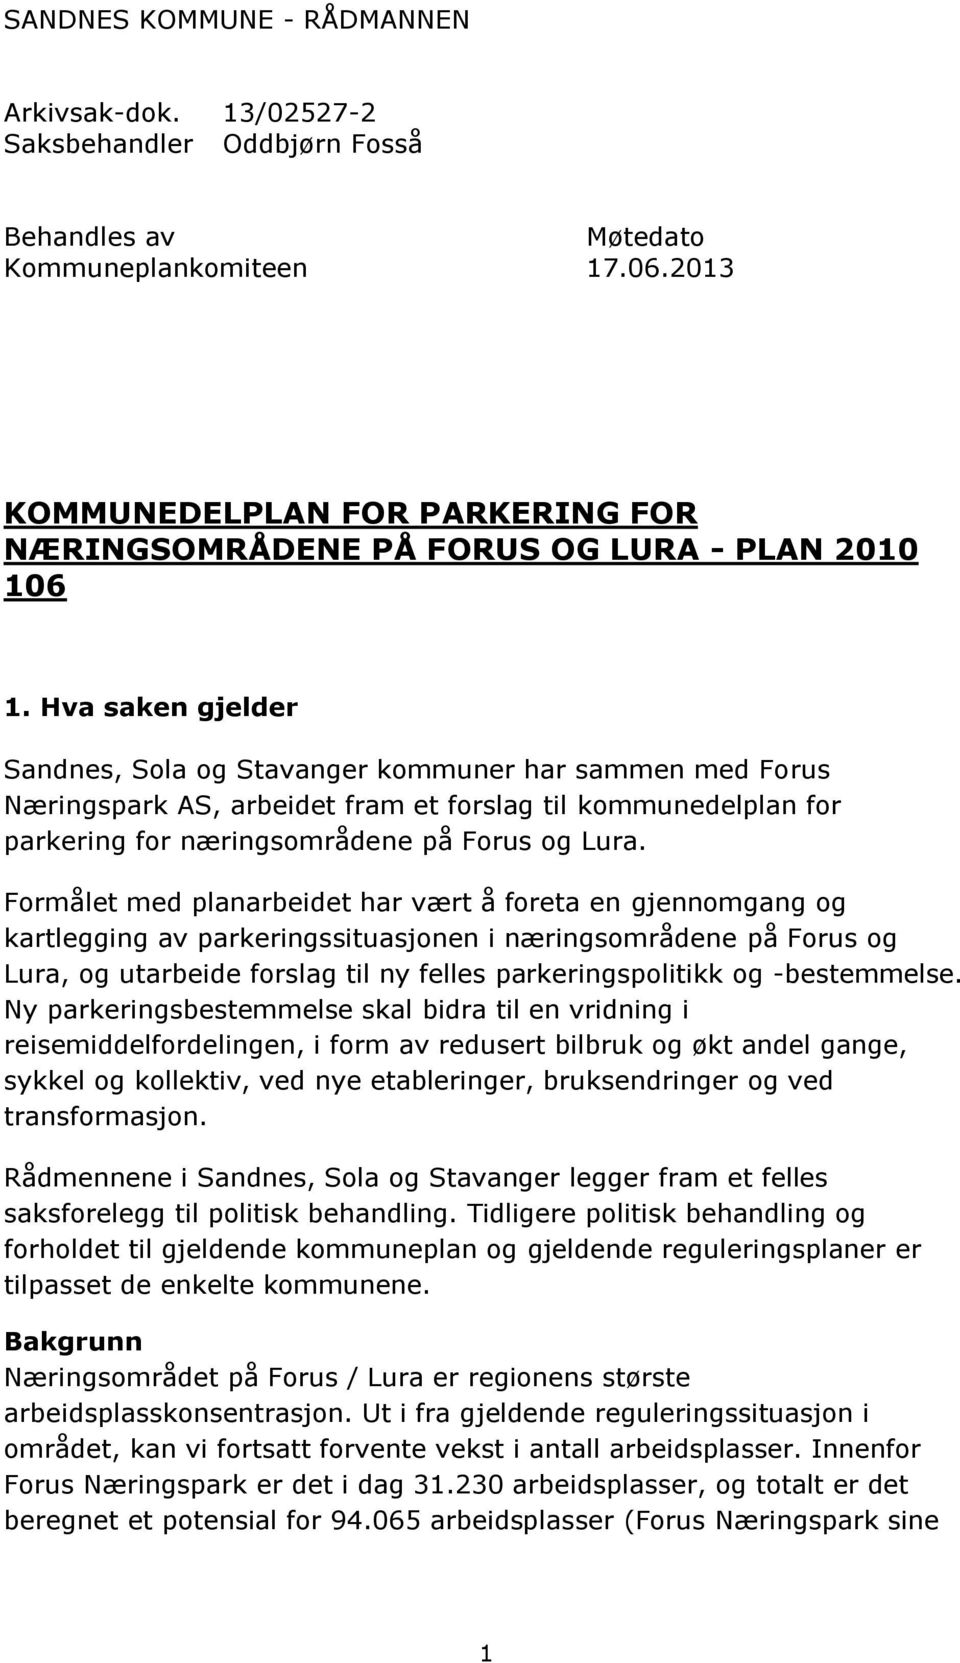 Hva saken gjelder Sandnes, Sola og Stavanger kommuner har sammen med Forus Næringspark AS, arbeidet fram et forslag til kommunedelplan for parkering for næringsområdene på Forus og Lura.